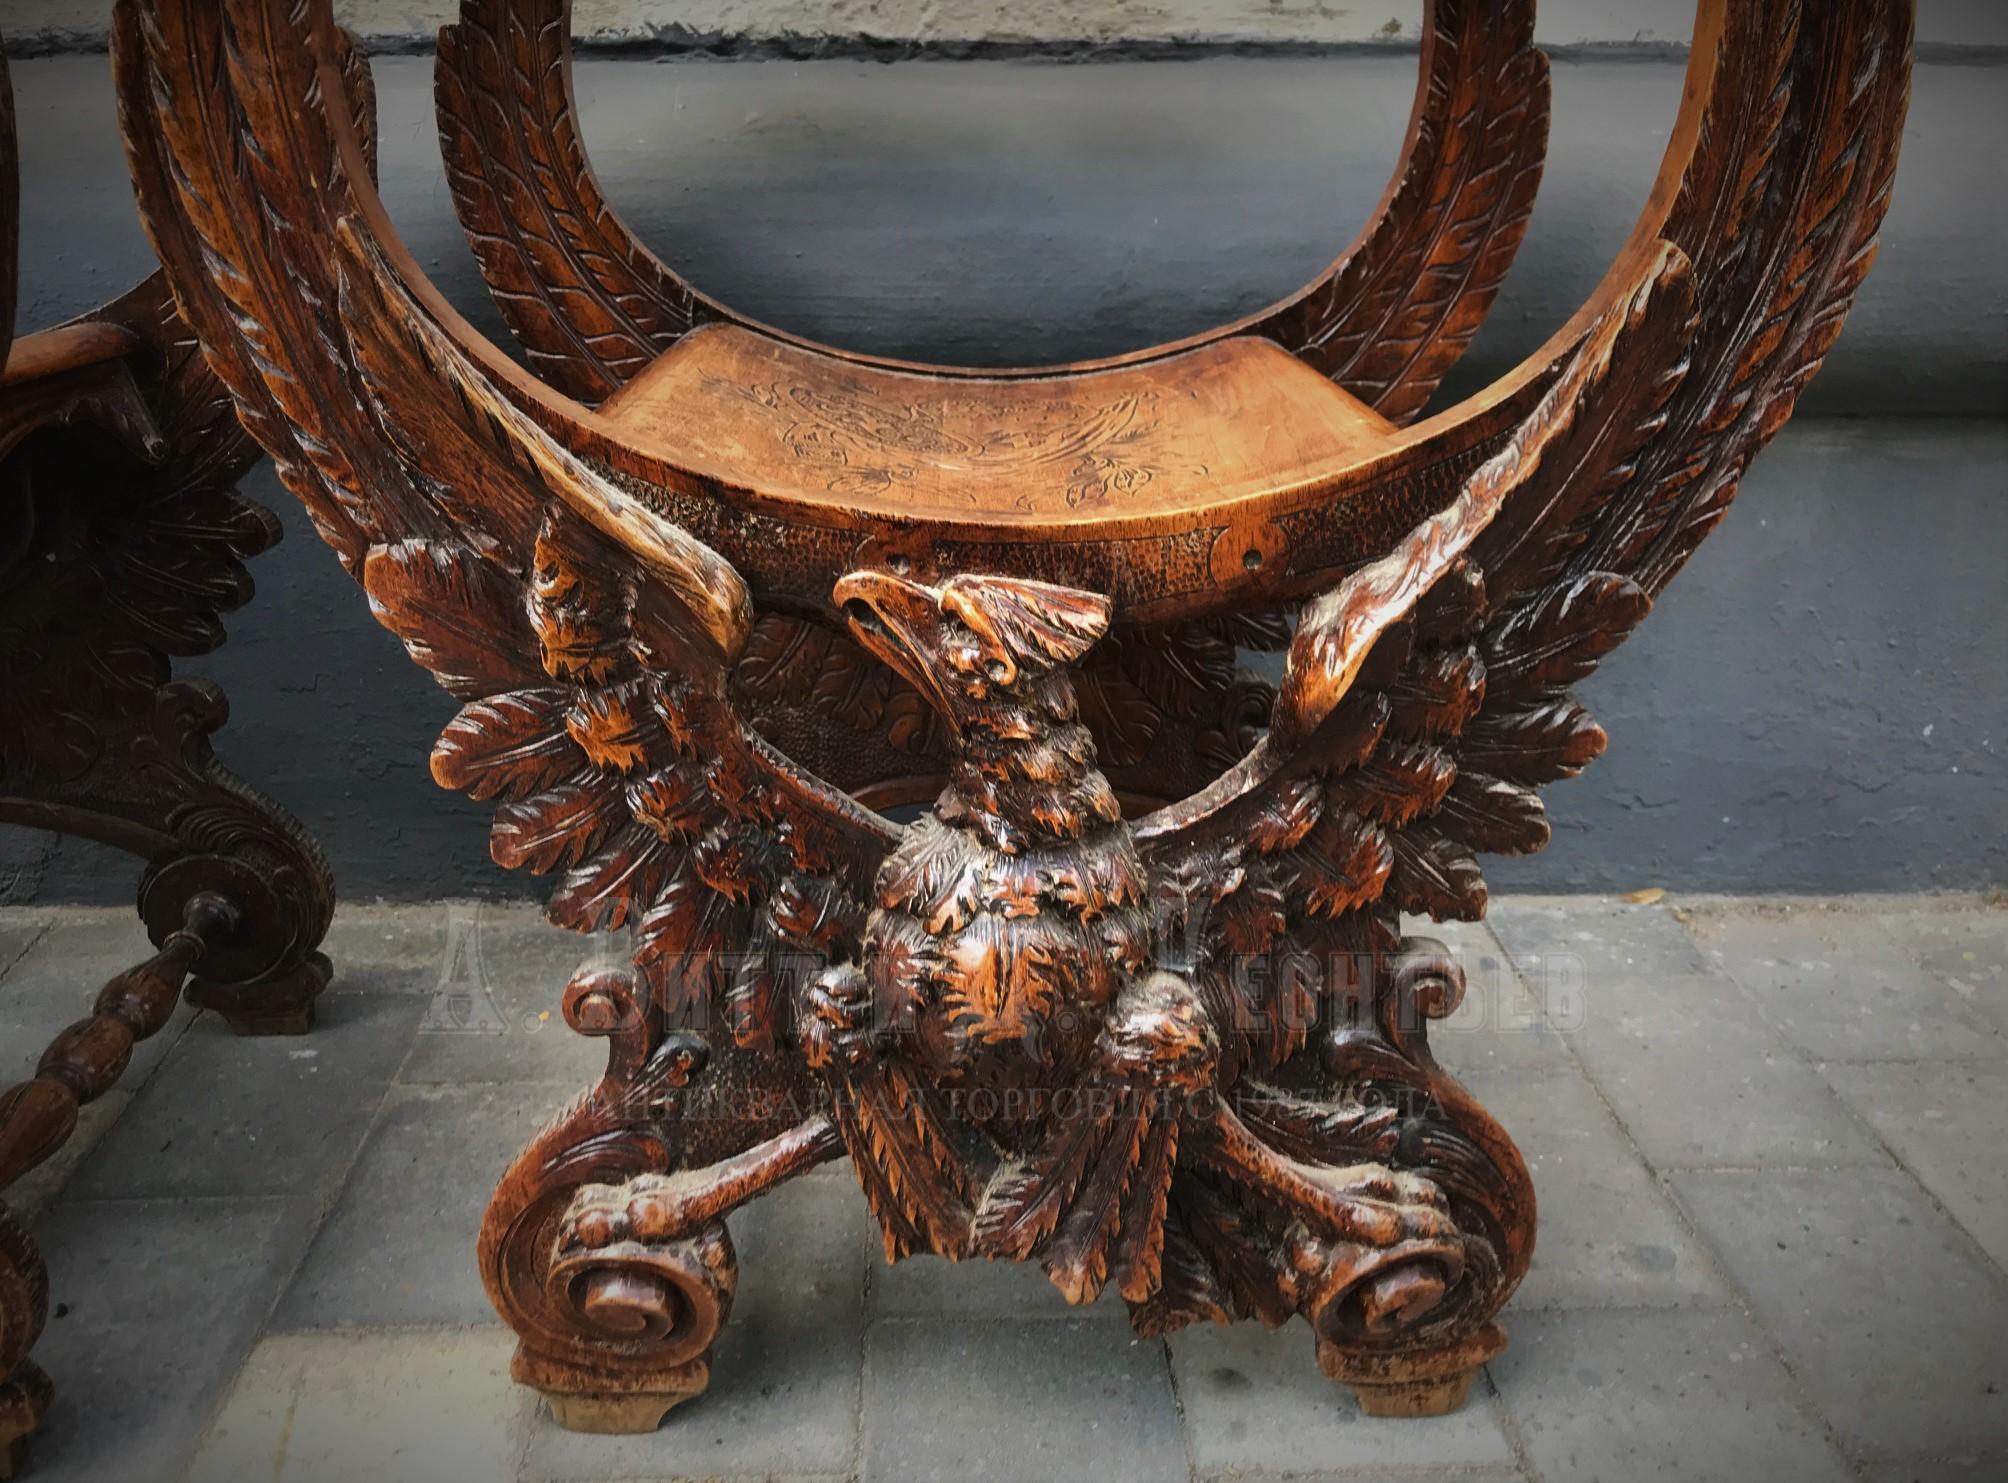 Парные антикварные ореховые кресла с орлами